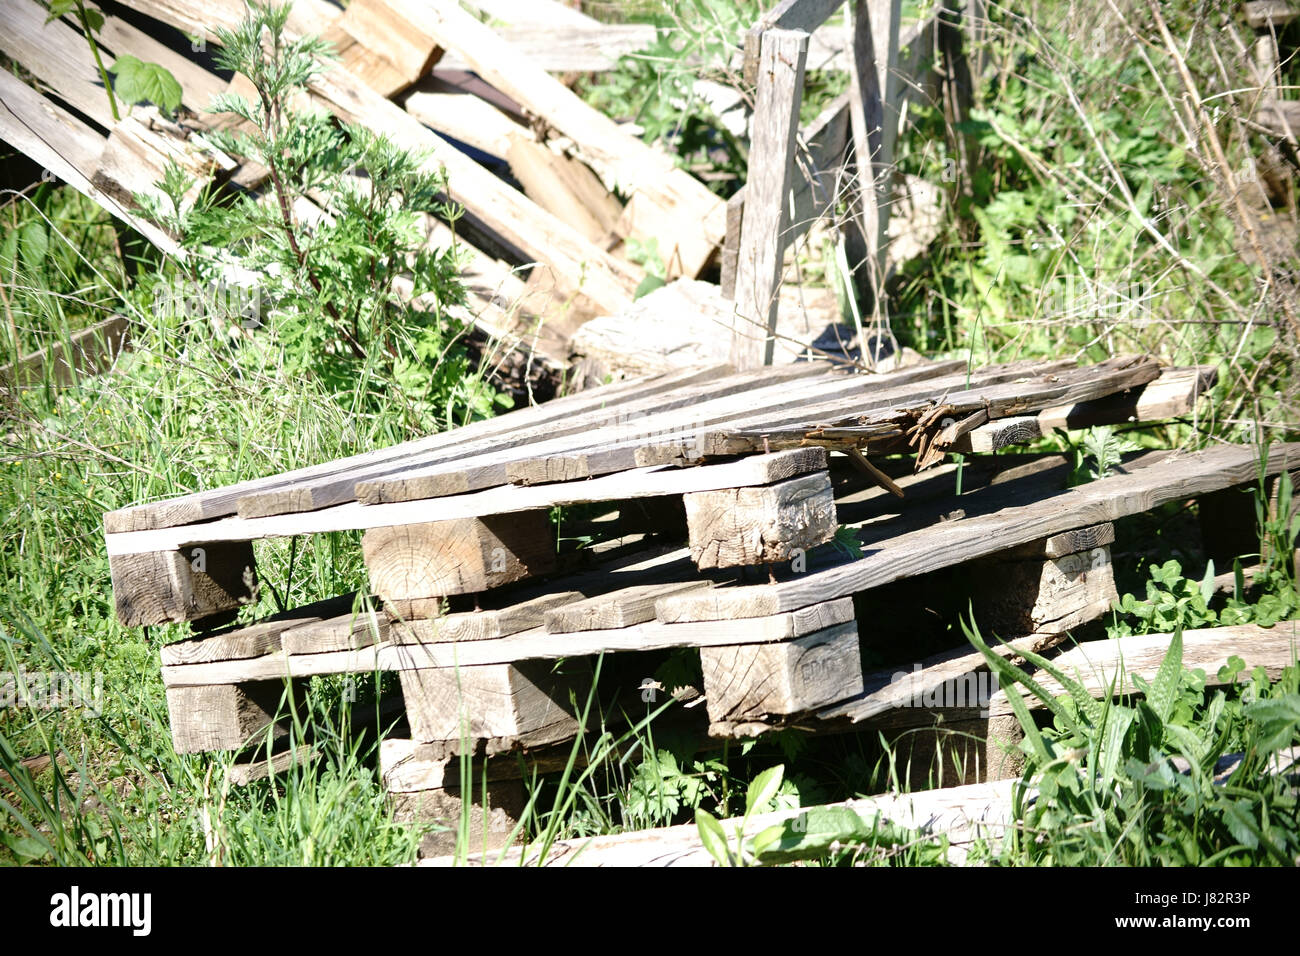 Verwahrloste Holzpaletten mit Holzabfällen sowie Pflanzenabfällen steht überwuchert in einer Wildwiese. Stock Photo